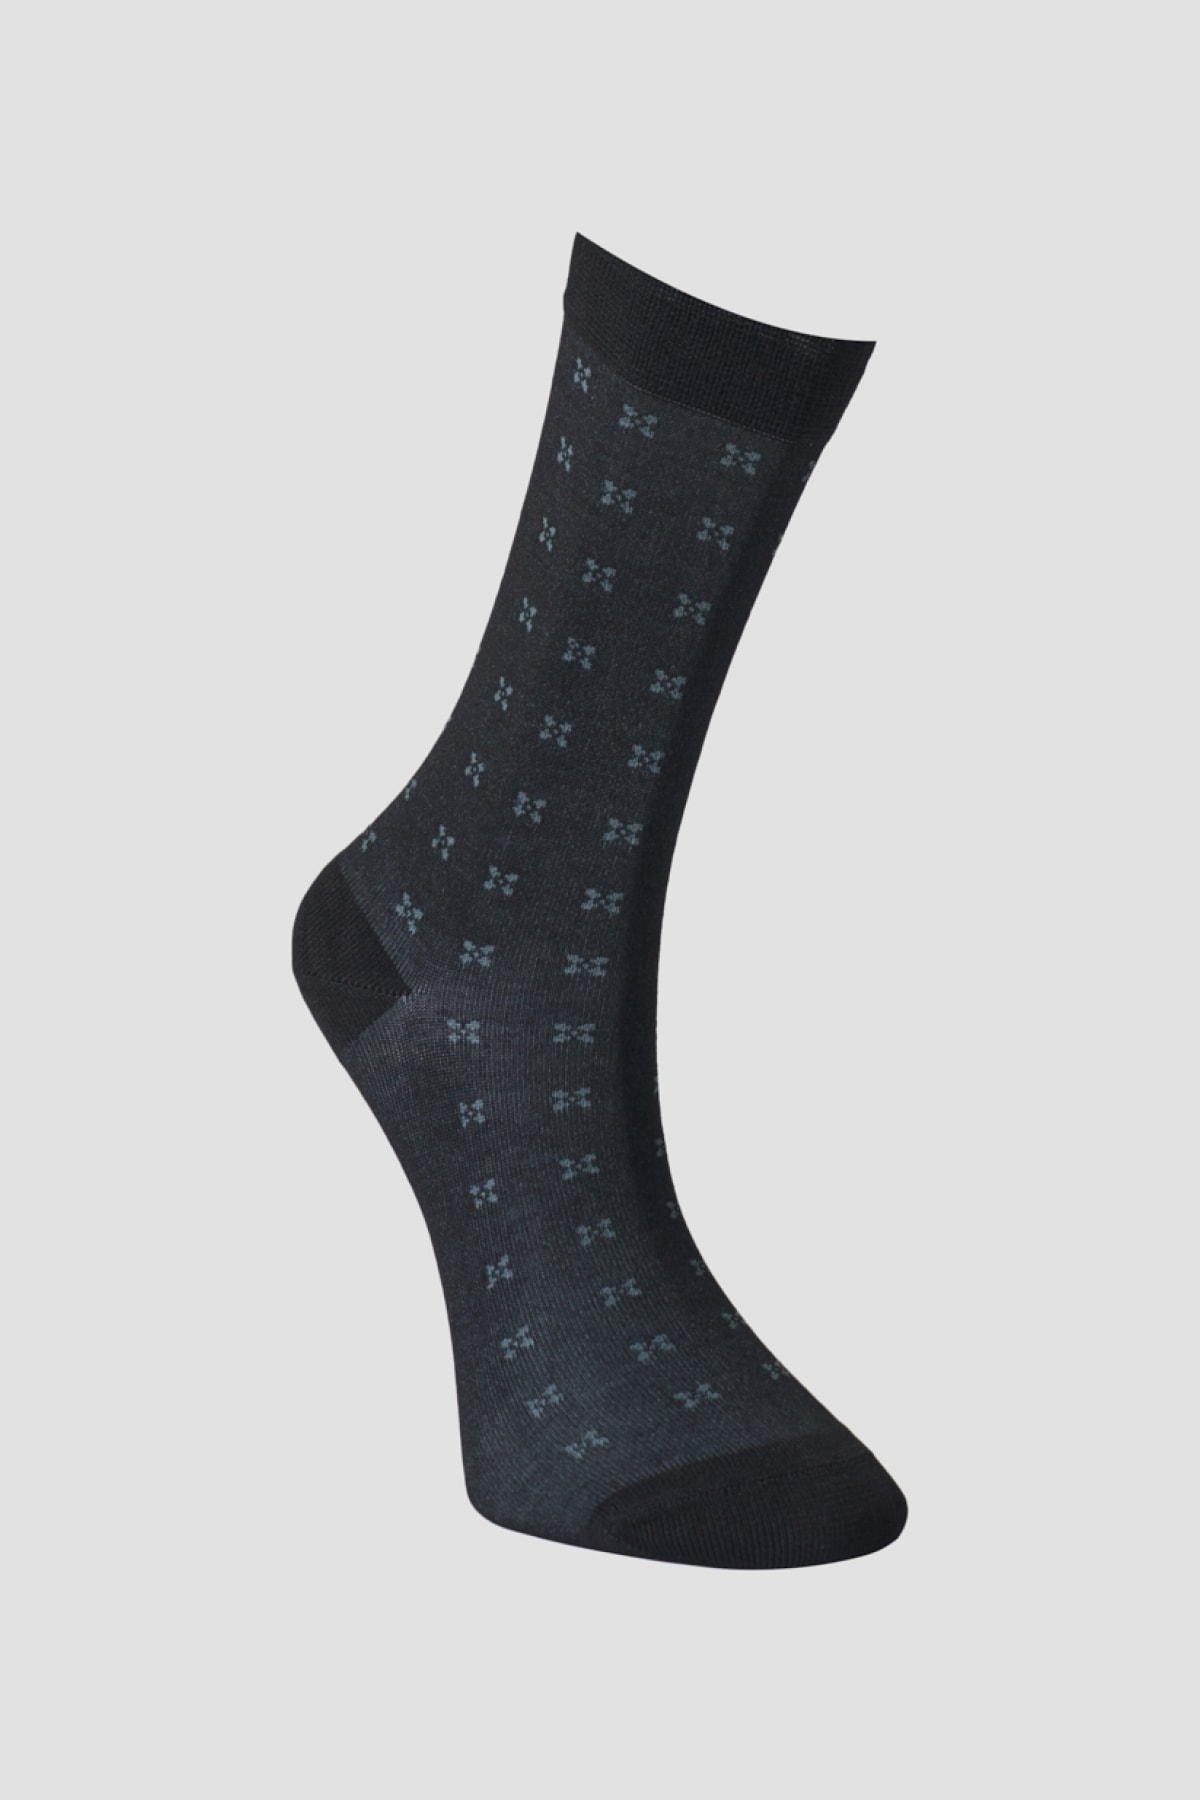 ALTINYILDIZ CLASSICS Men's Black-gray Bamboo Socks.